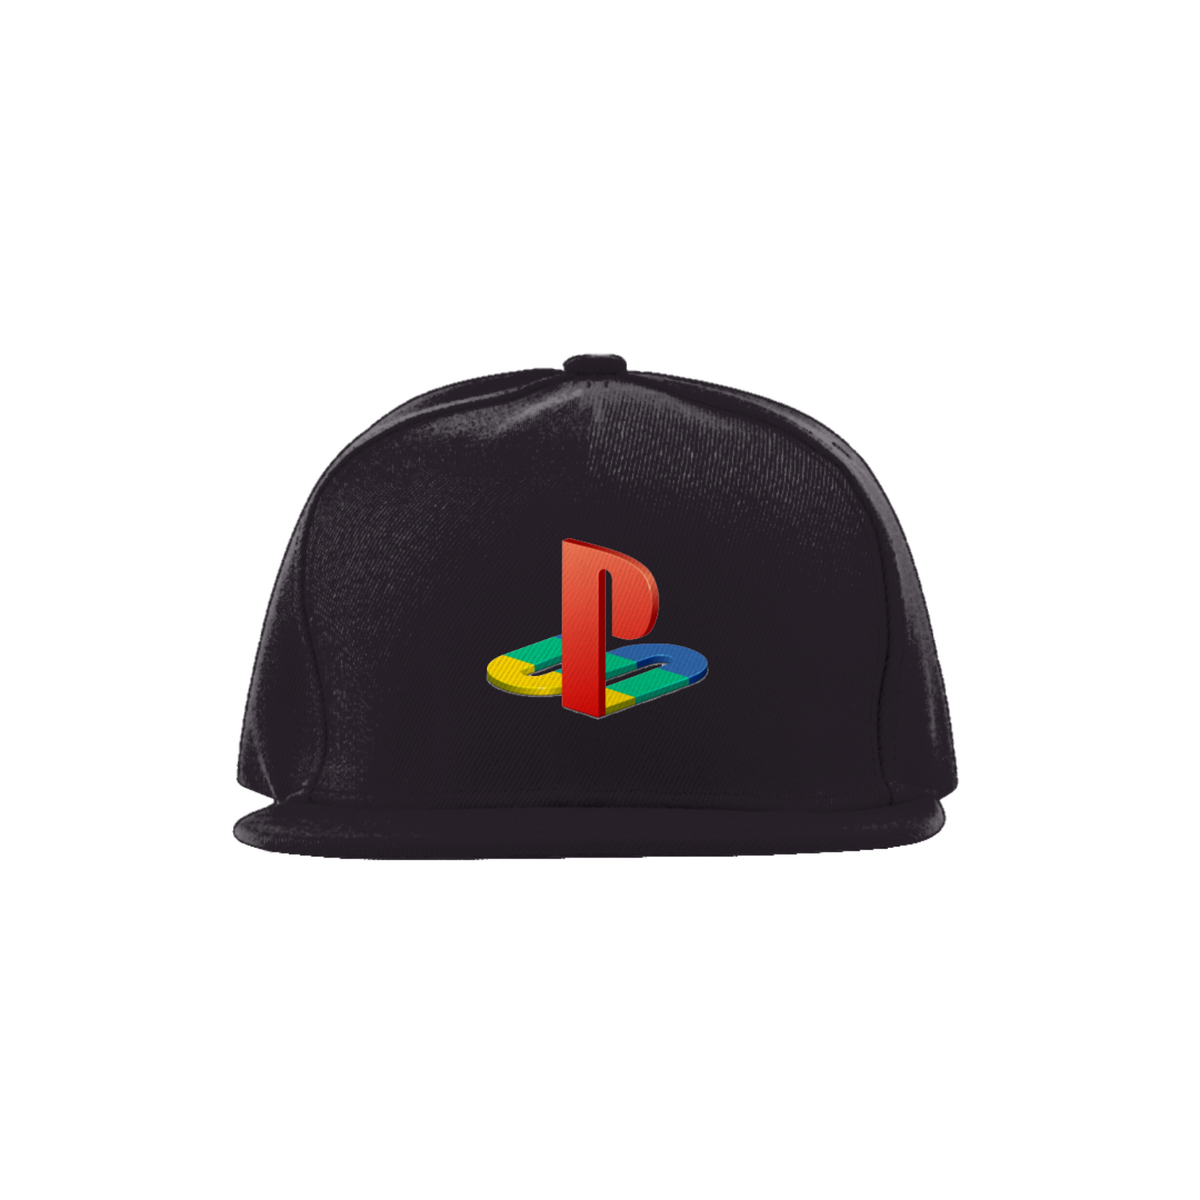 Nome do produto: Boné - Playstation Sony